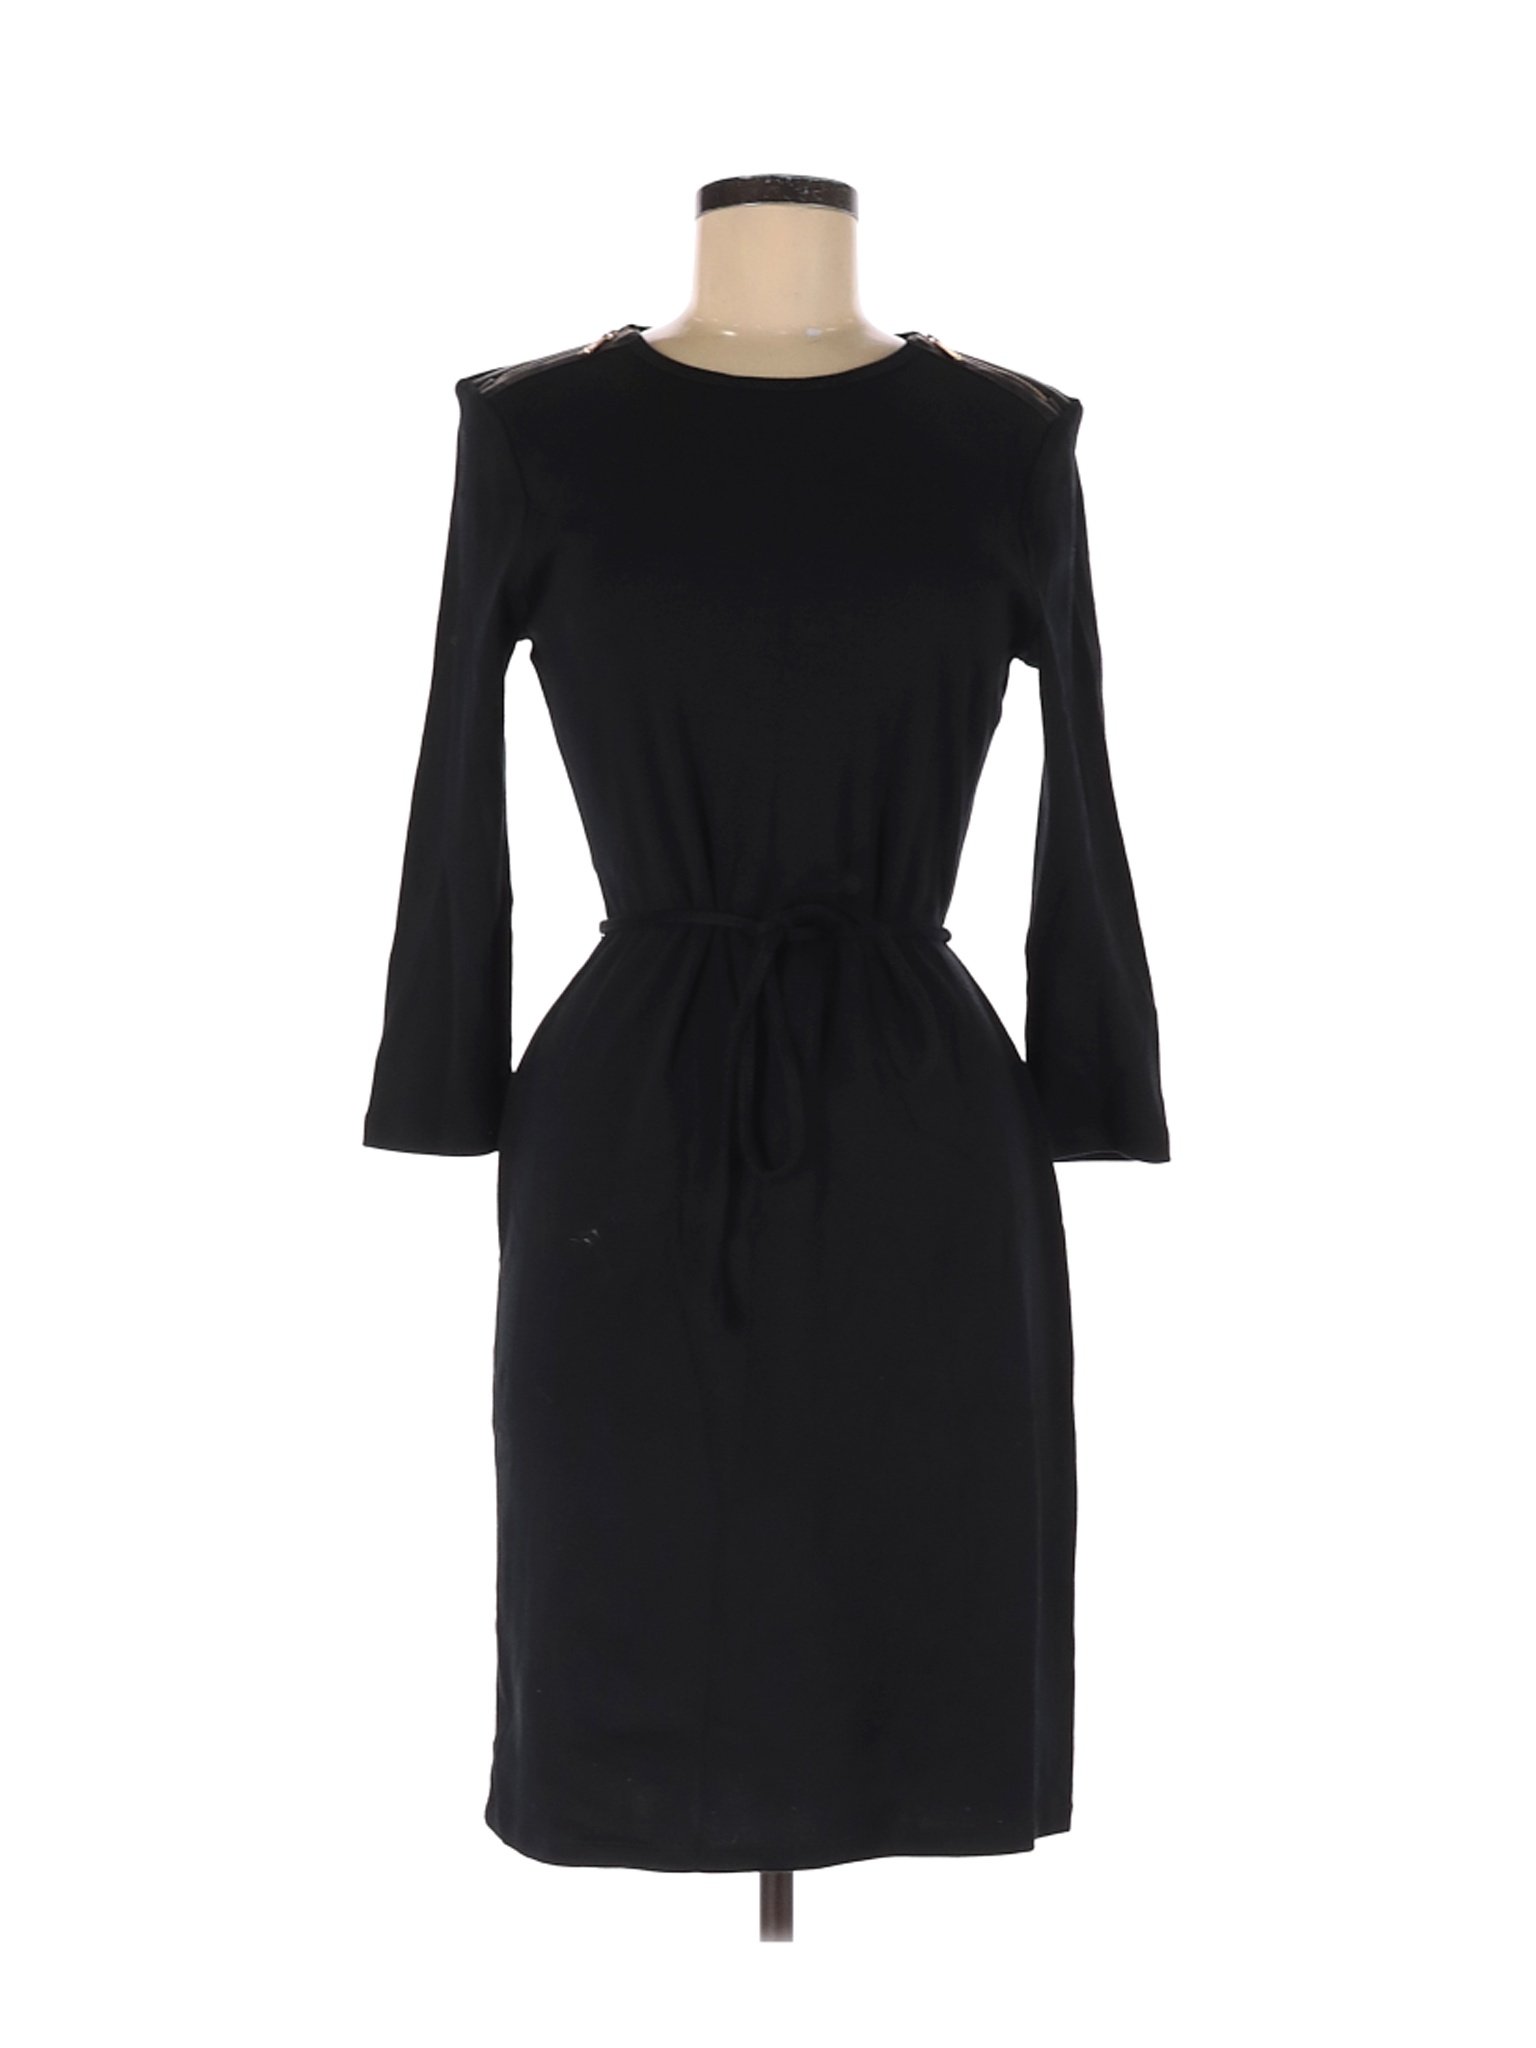 Lauren by Ralph Lauren Women Black Casual Dress M | eBay